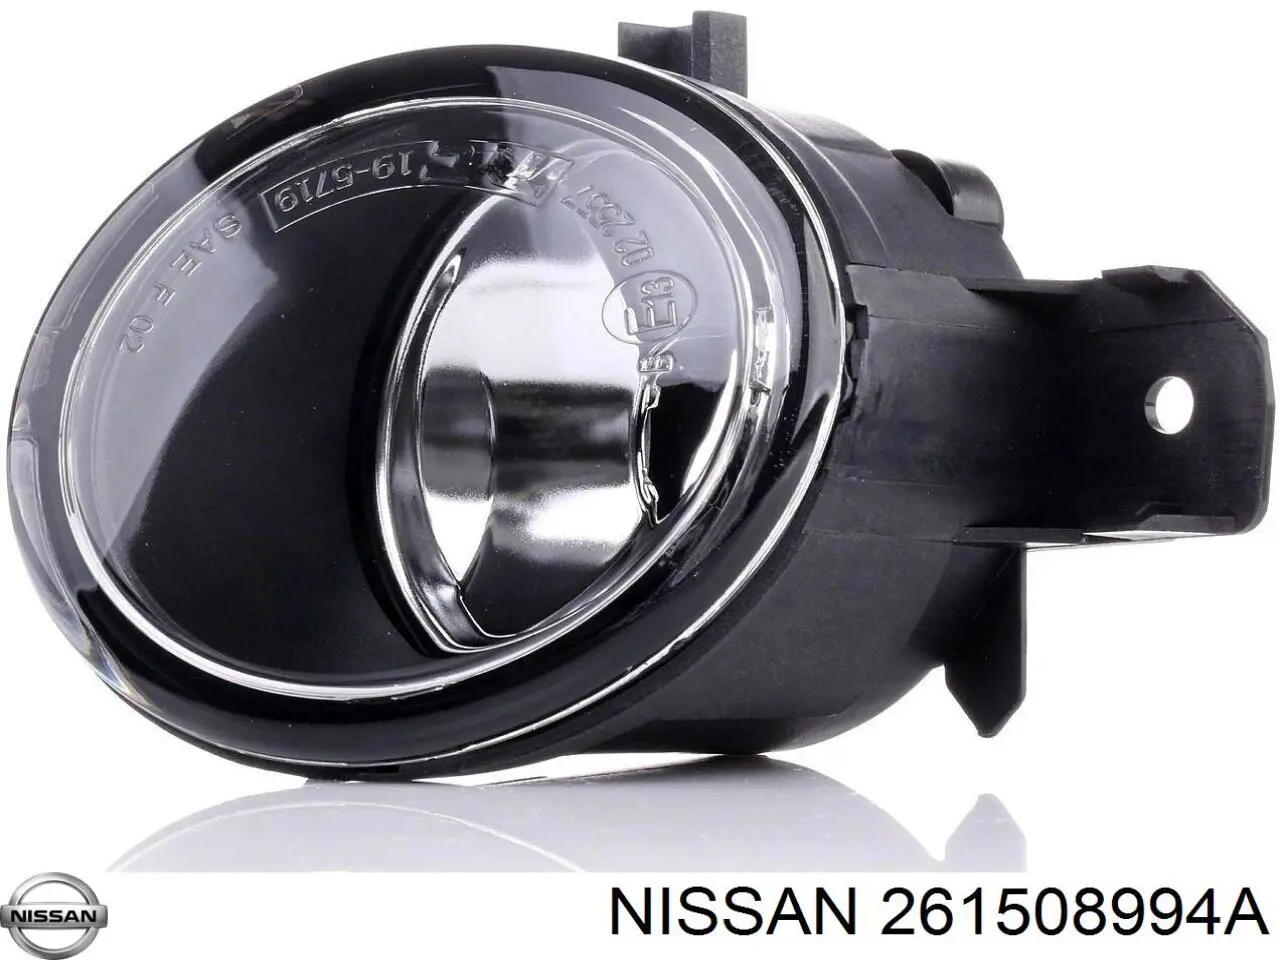 261508994A Nissan luzes de nevoeiro direitas